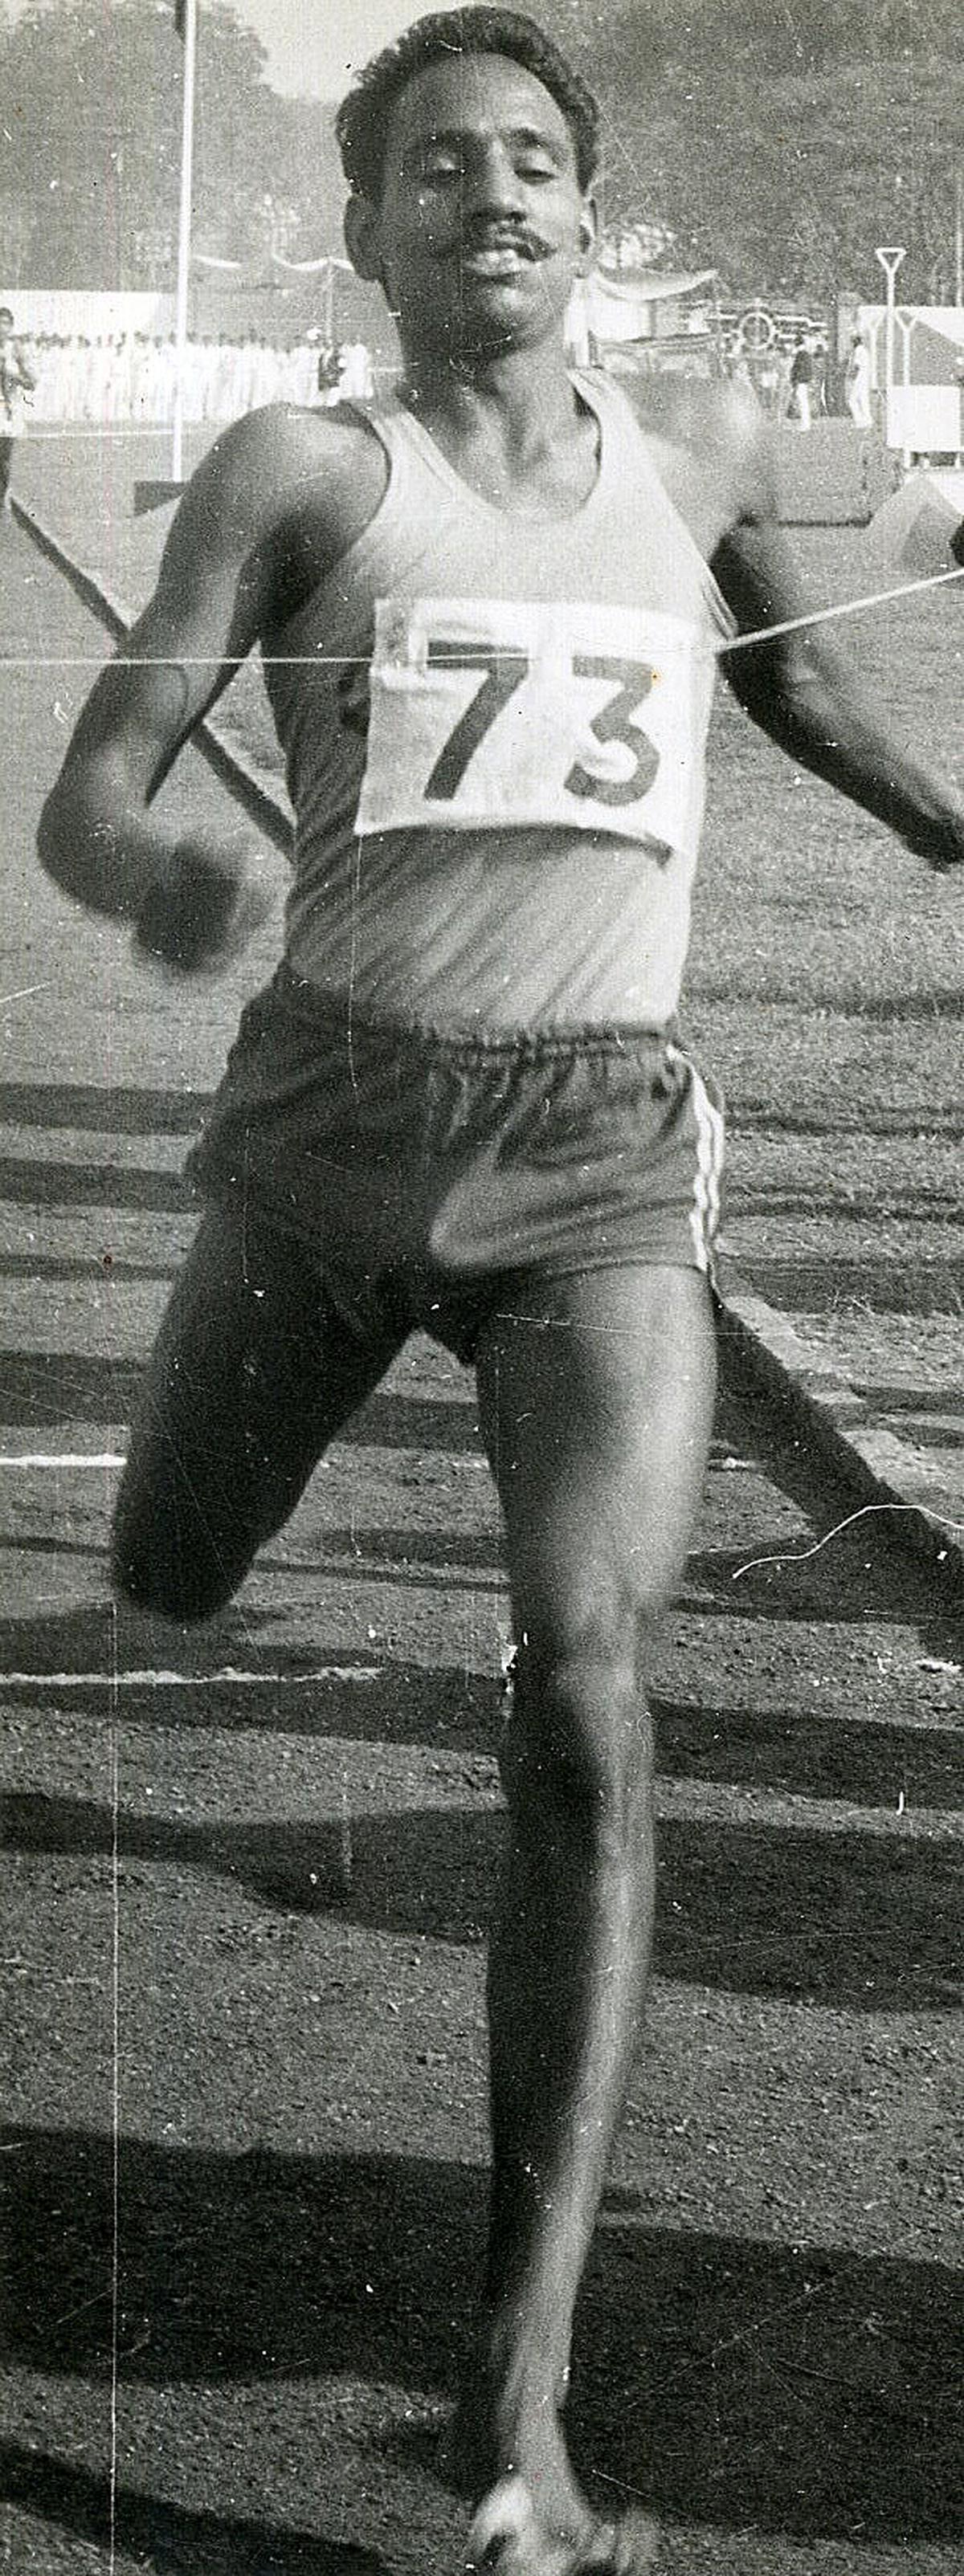 Hari Chand at the Bangkok Games in 1978.